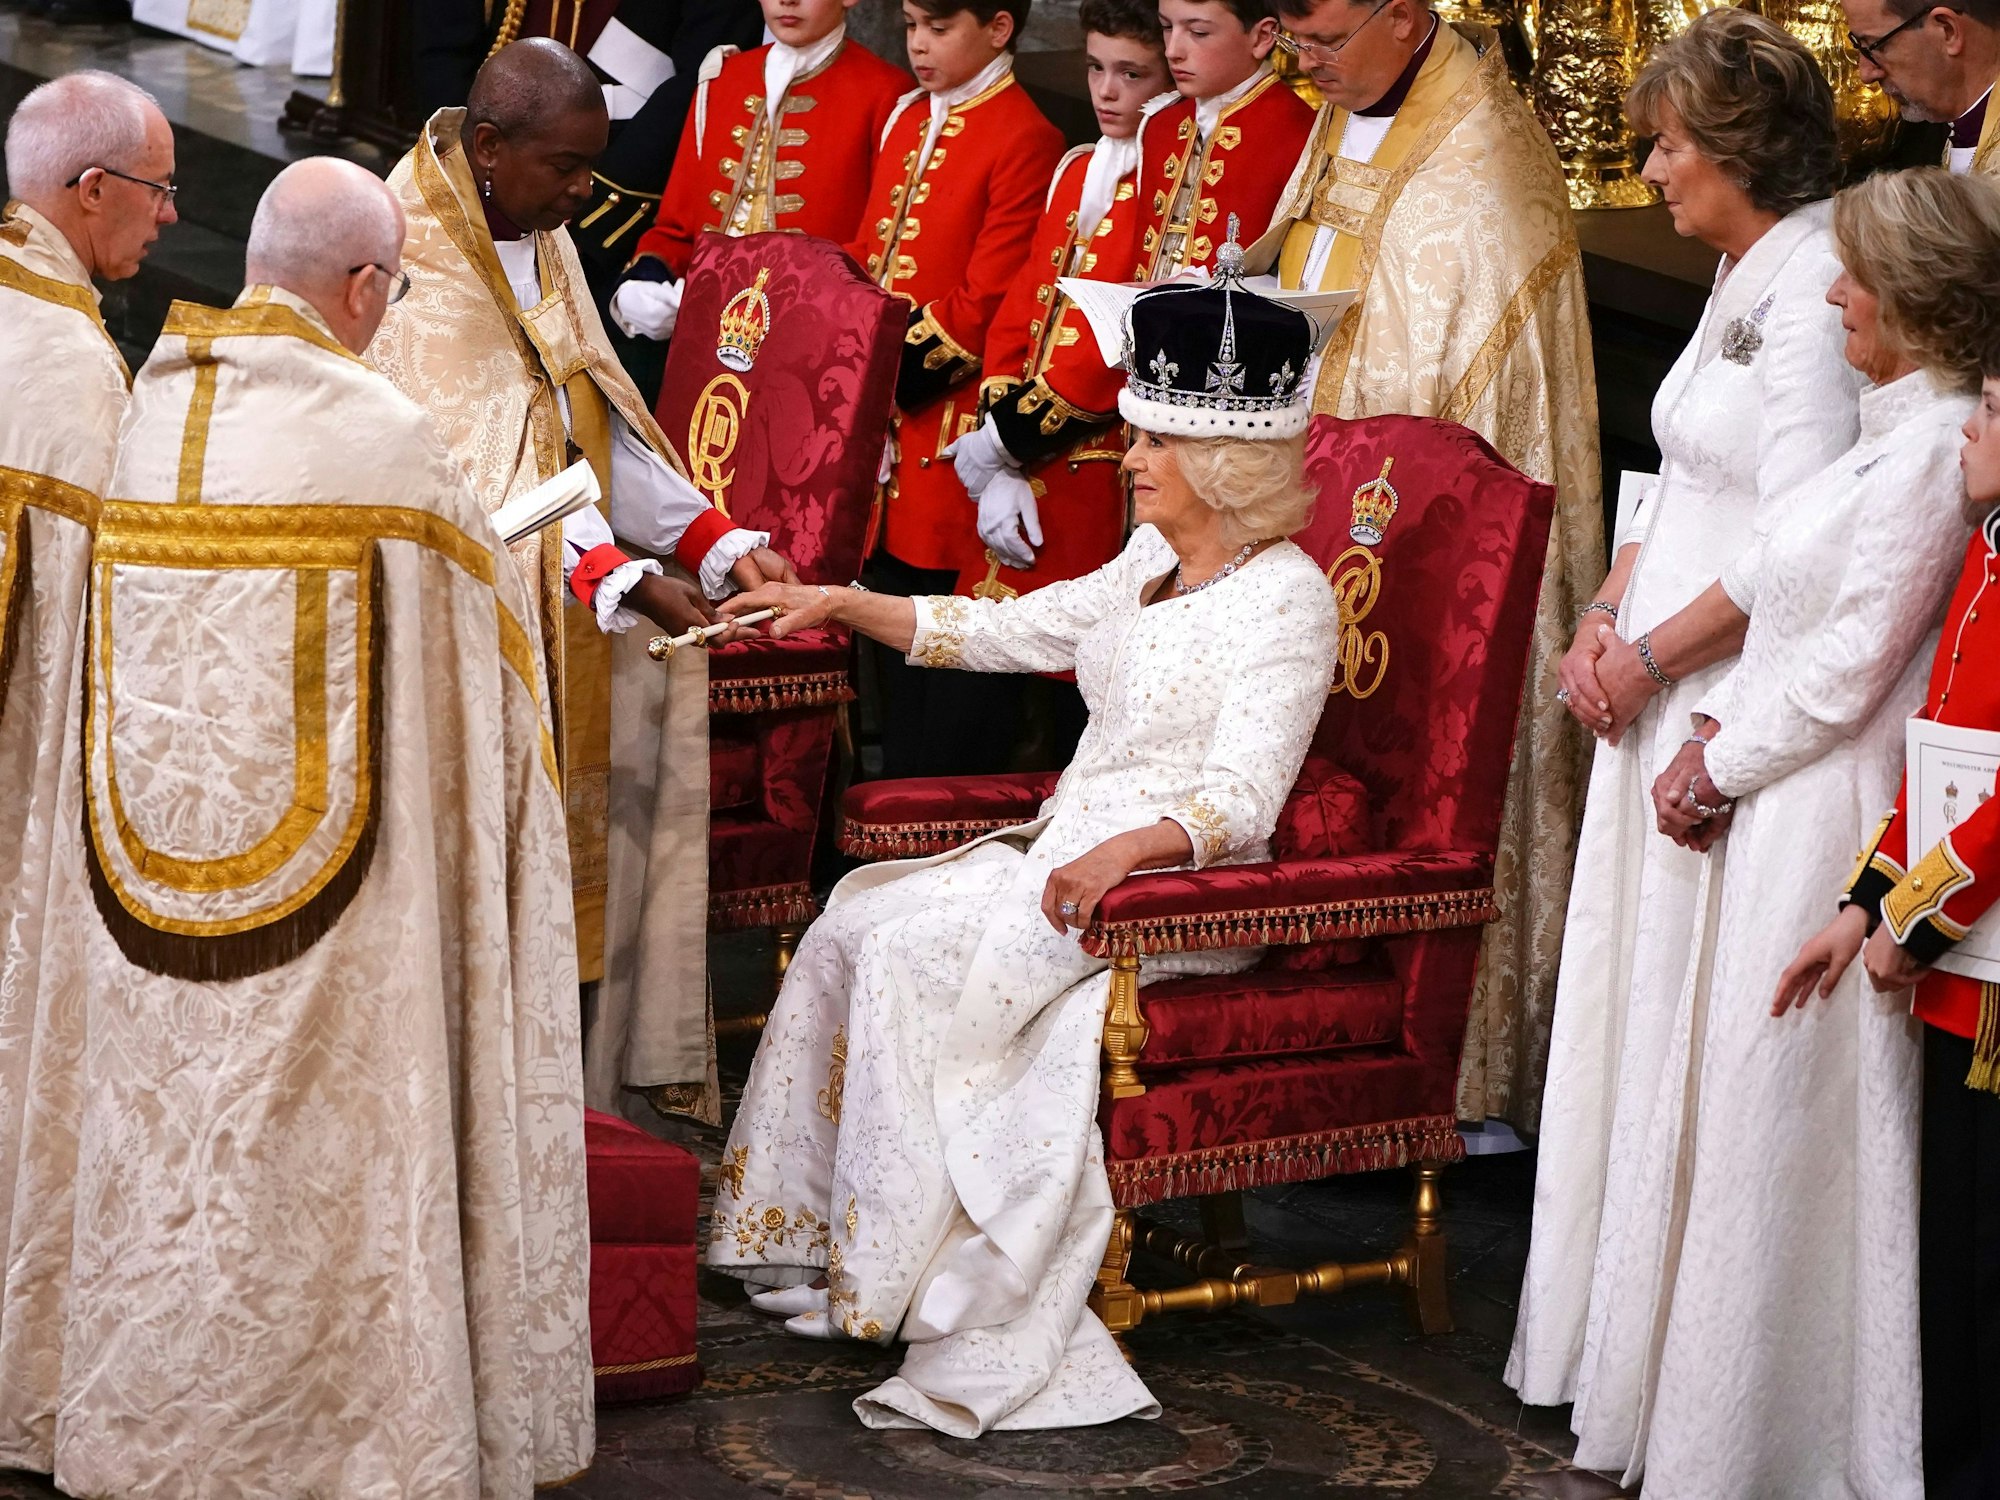 Königin Camilla mit der Queen Mary's Crown (Krone von Queen Mary) lächelt während ihrer Krönungszeremonie in der Westminster Abbey.